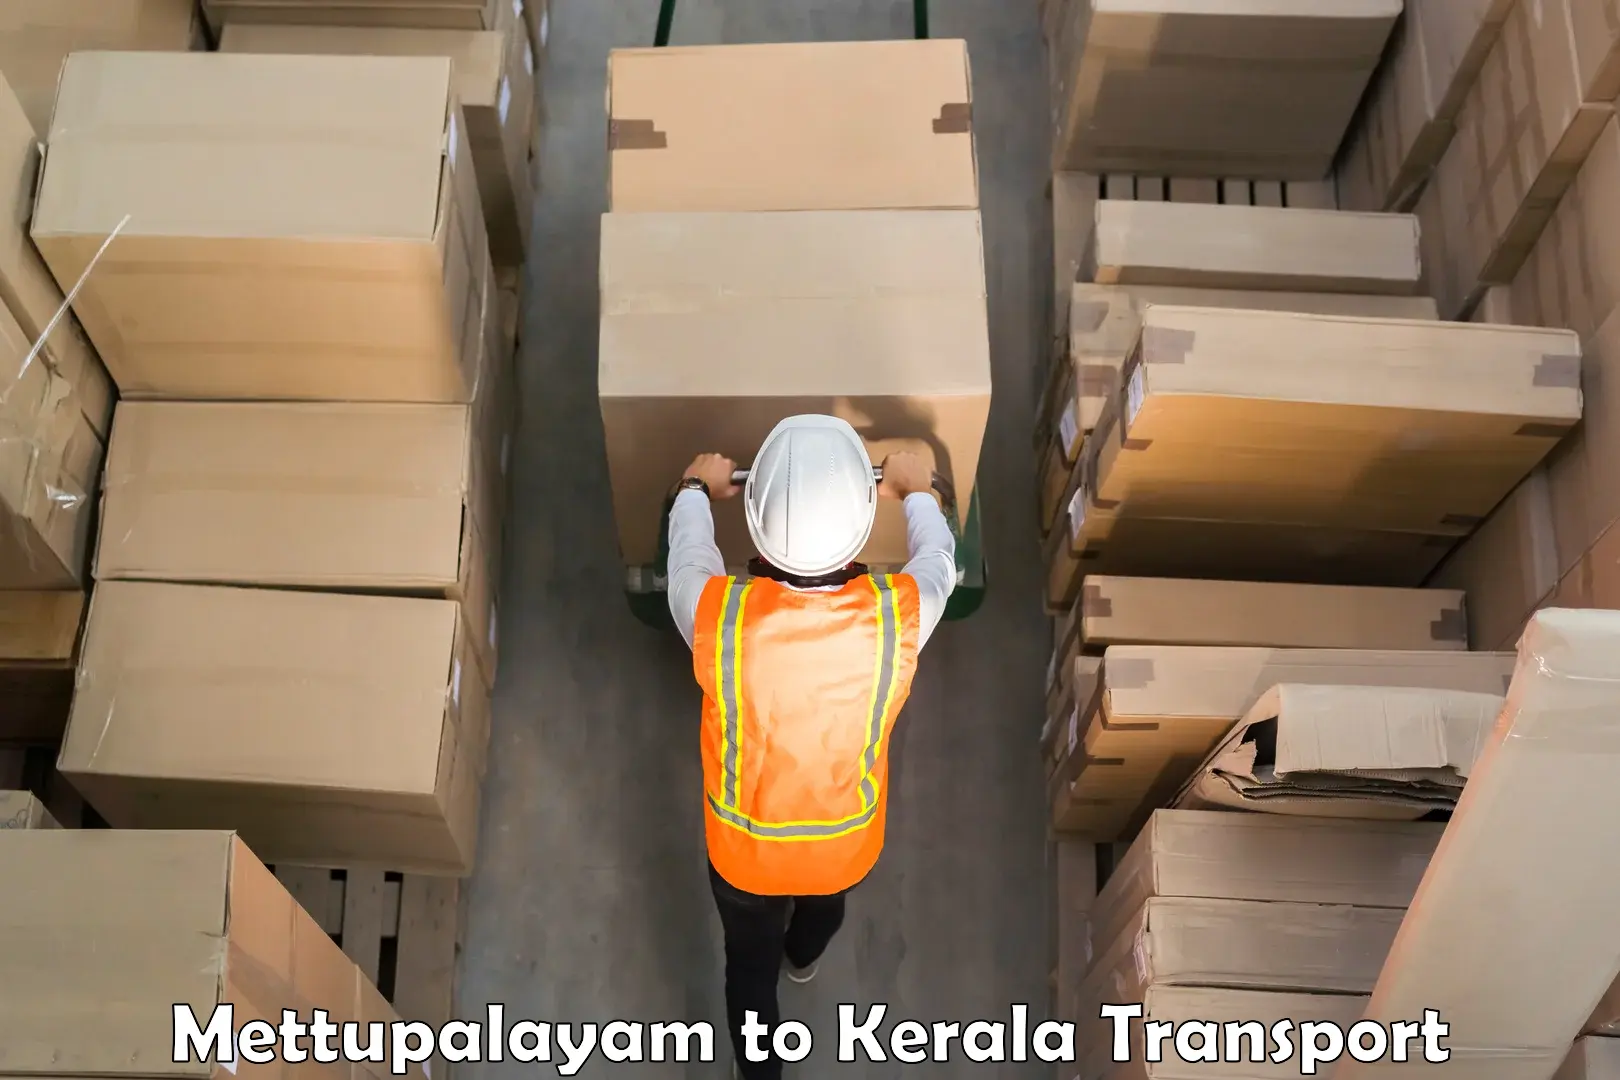 Online transport service Mettupalayam to Kayamkulam